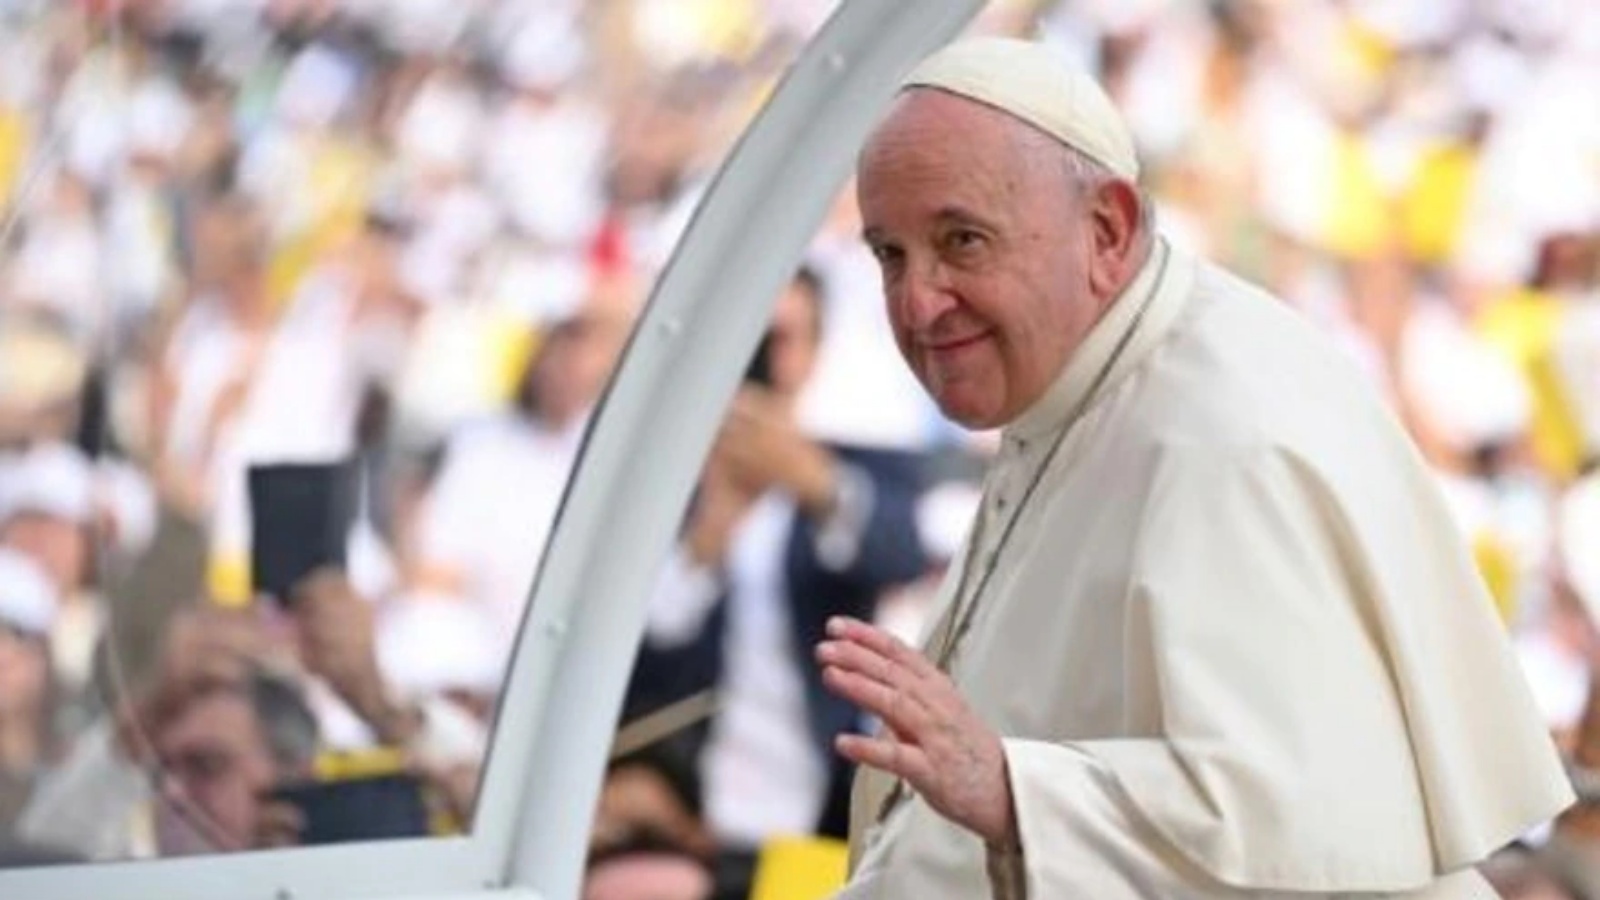 البابا فرنسيس أثناء وصوله في السيارة البابوية المفتوحة إلى استاد البحرين الوطني، حيث أحيا في 5 نوفمبر 2022 قداساً إلهياً حضره قرابة ثلاثين ألف مؤمن في اليوم الثالث من زيارته التاريخية الى البحرين